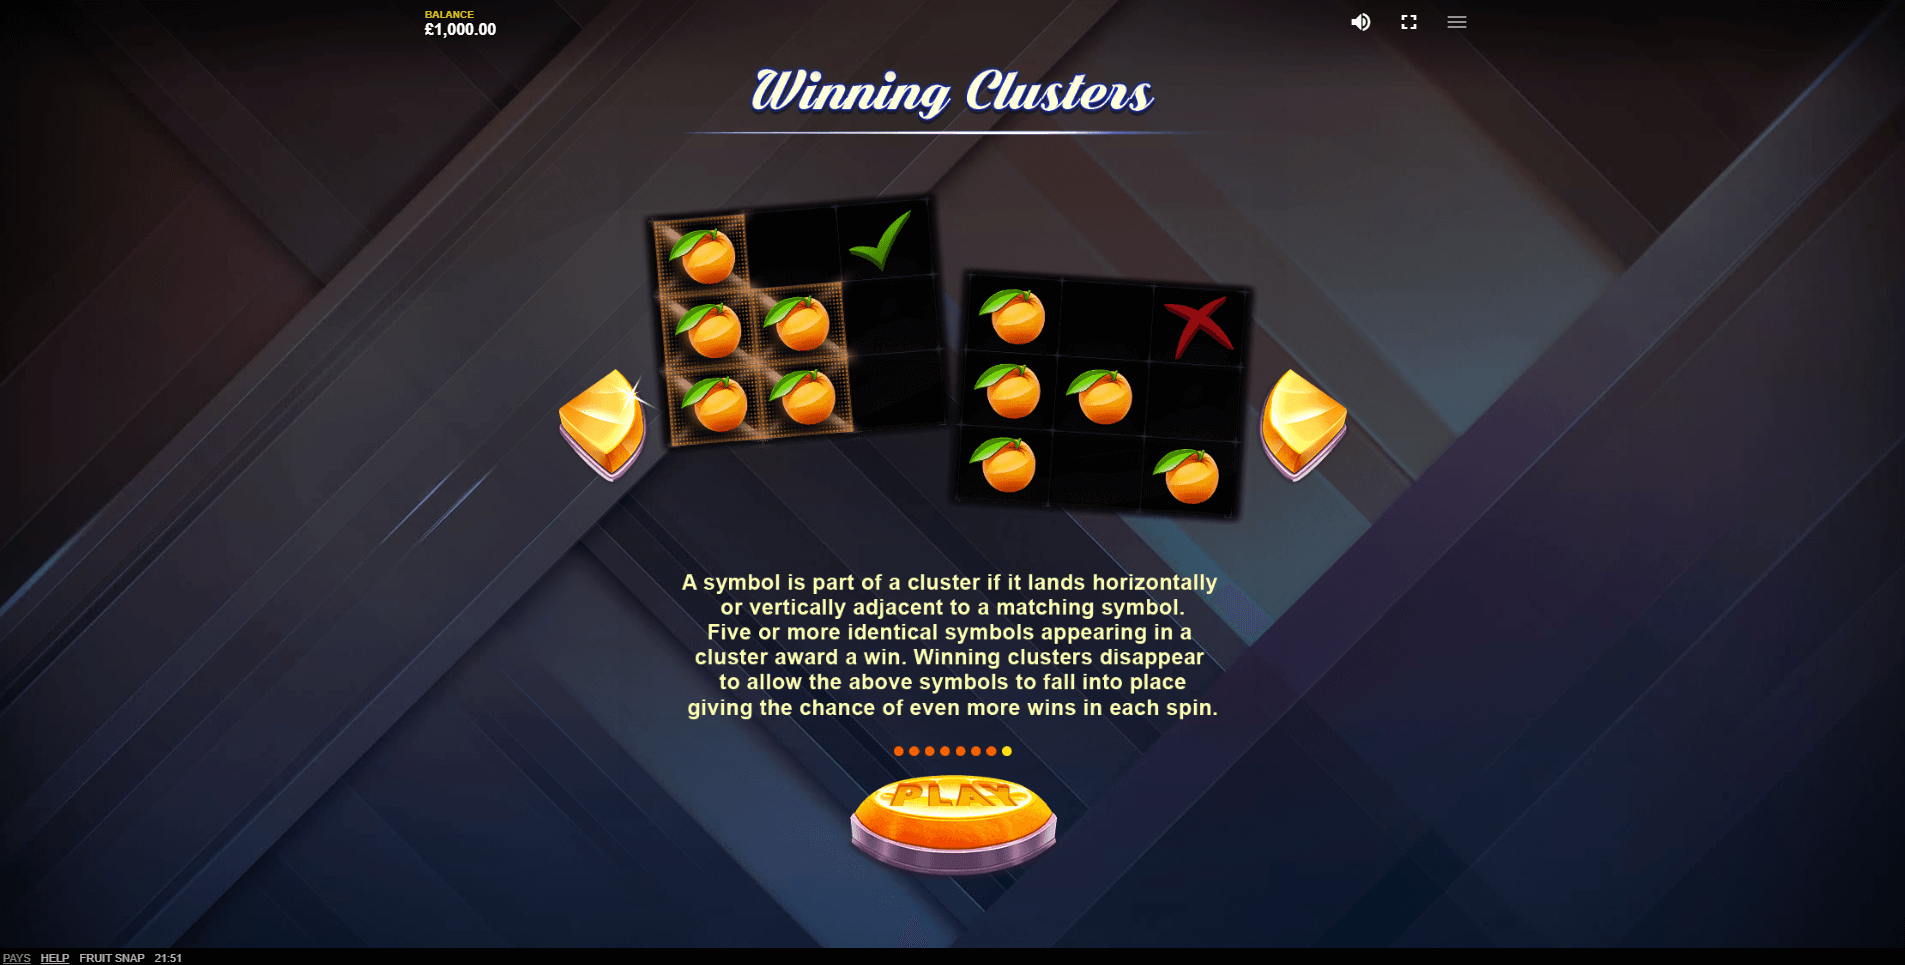 fruit snap slot machine detail image 6